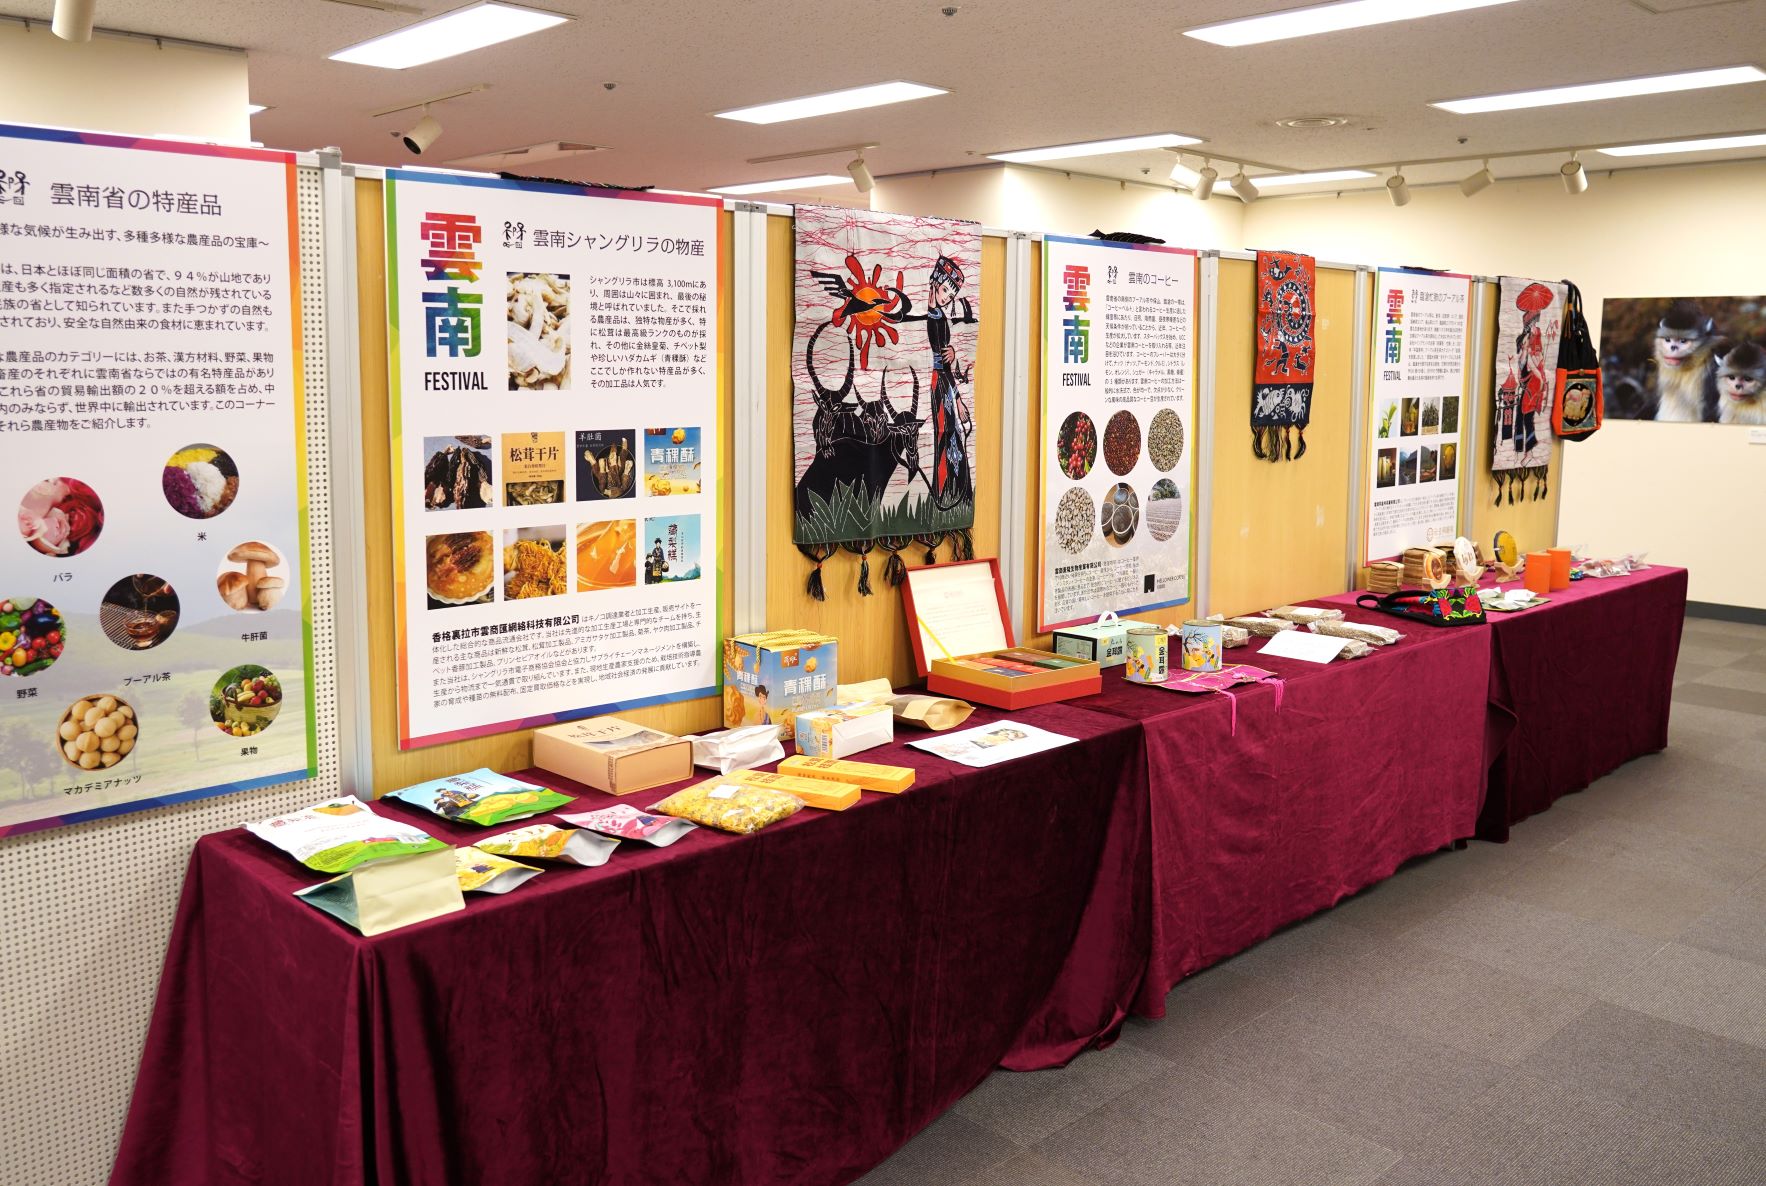 会場には、プーアル茶やキノコなど雲南省の特産品を展示するコーナーも。